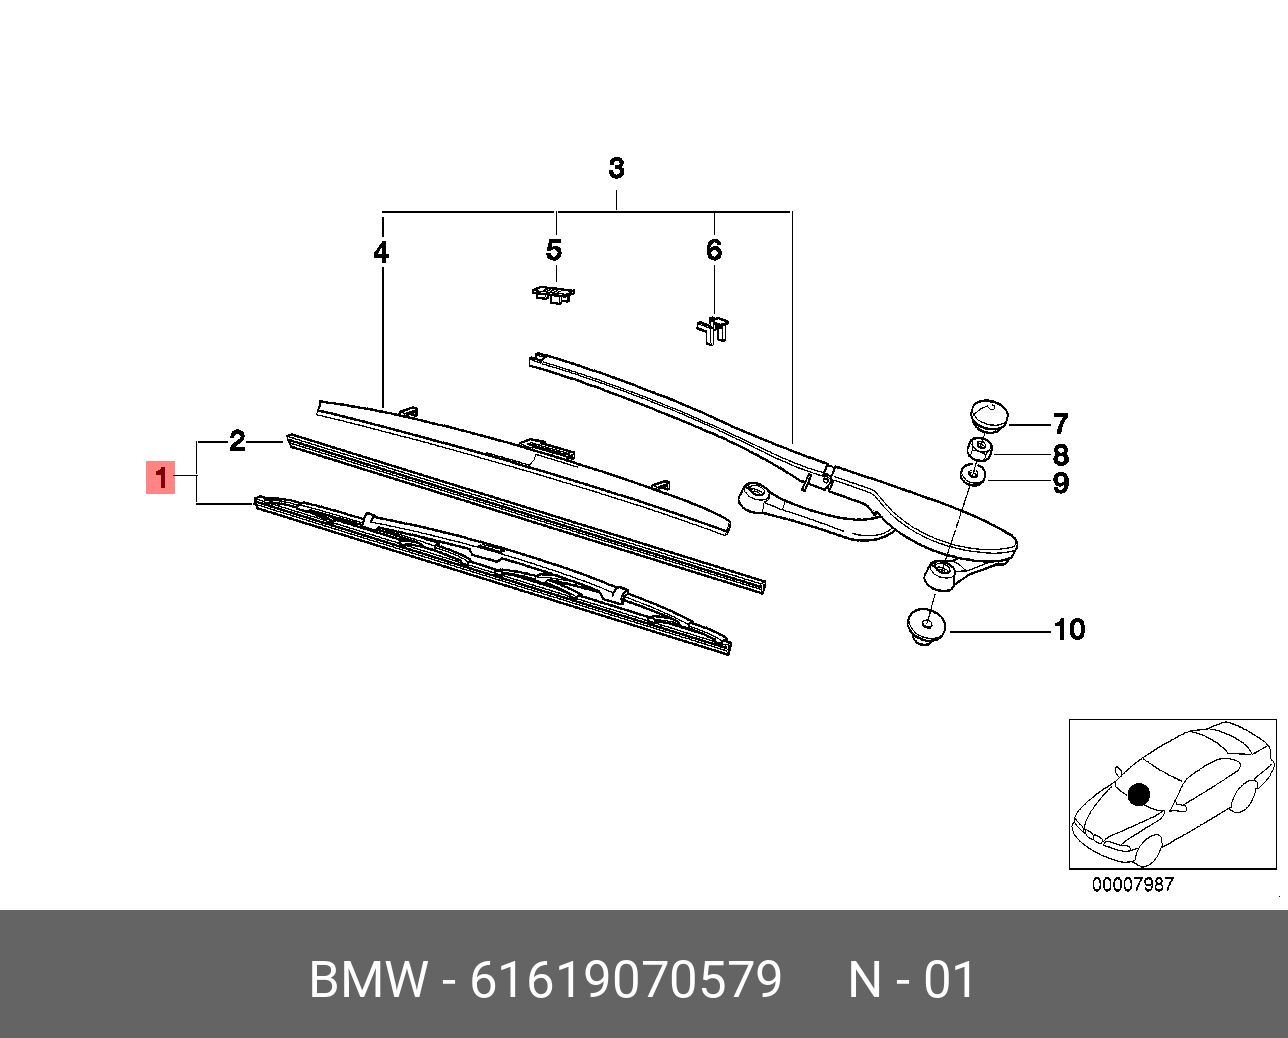 Щётки стеклоочистителя, комплект, передние   BMW арт. 61619070579